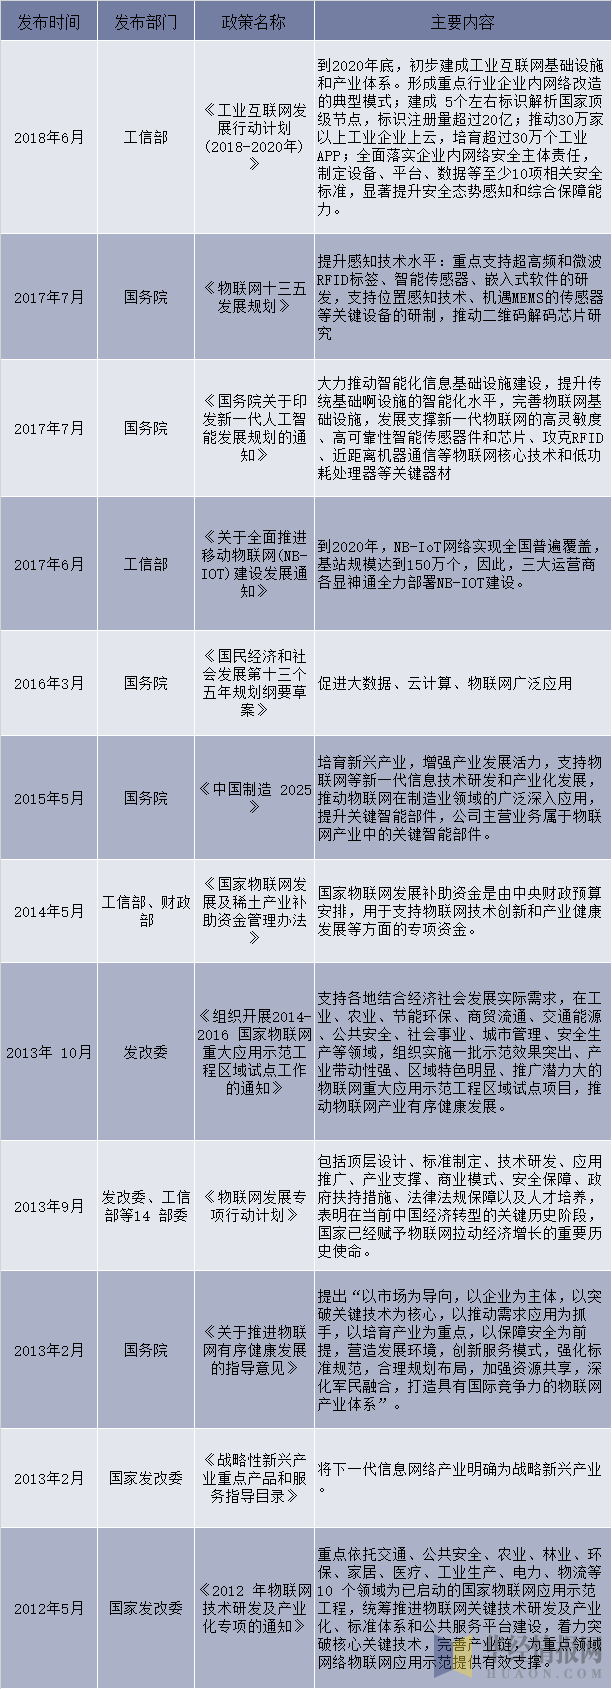 2012-2018年中国RFID行业相关产业政策和法规